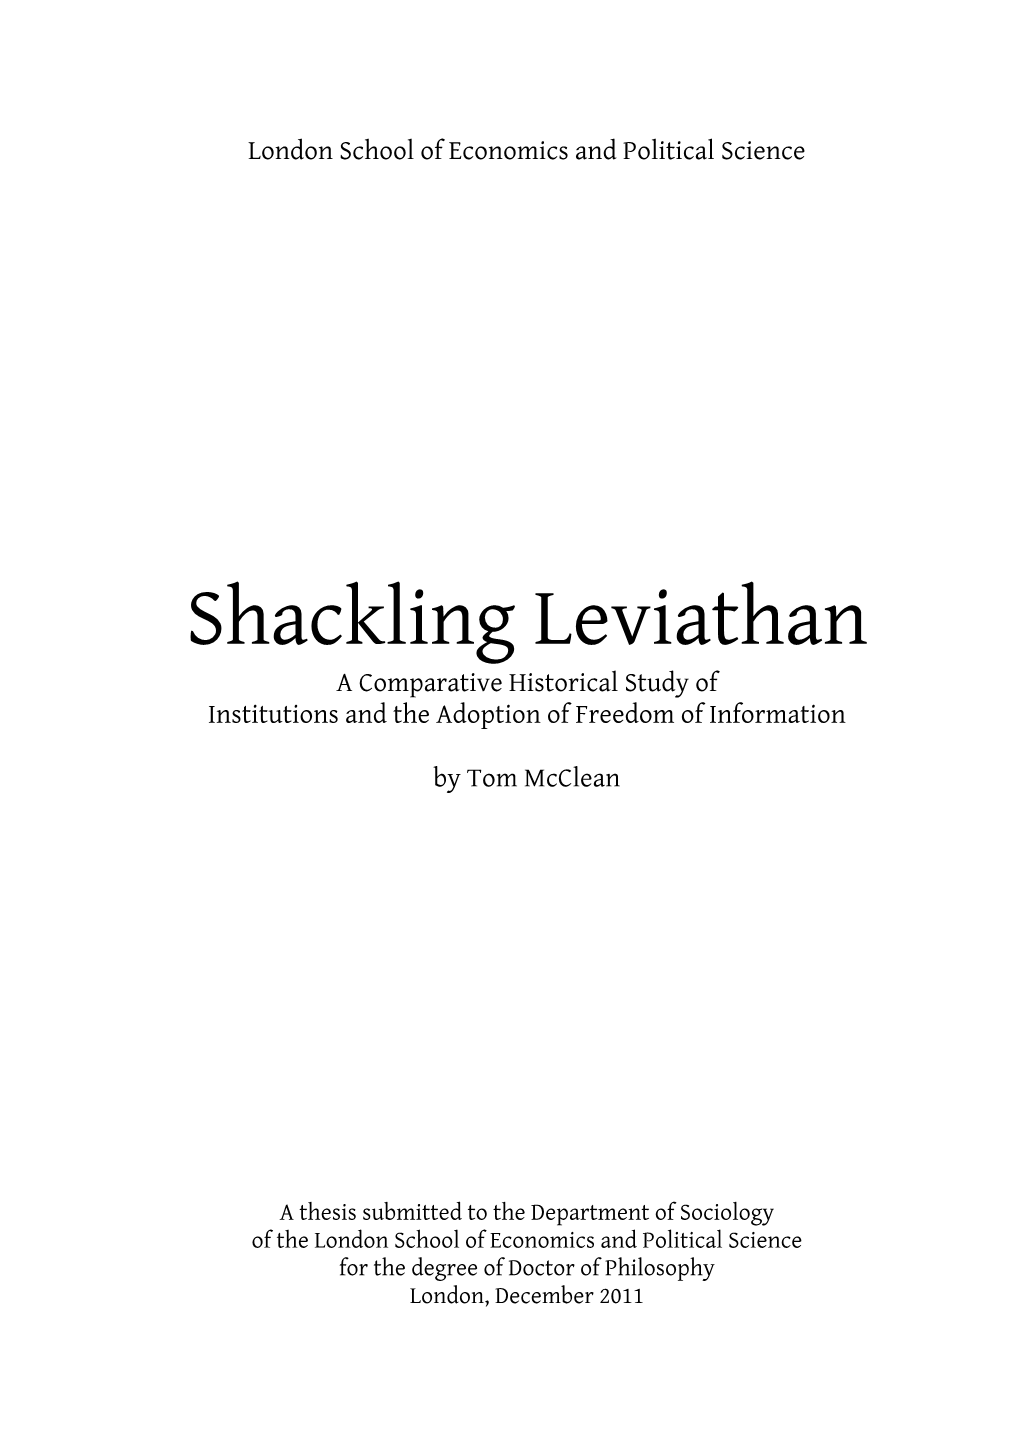 Shackling Leviathan (V3.0)